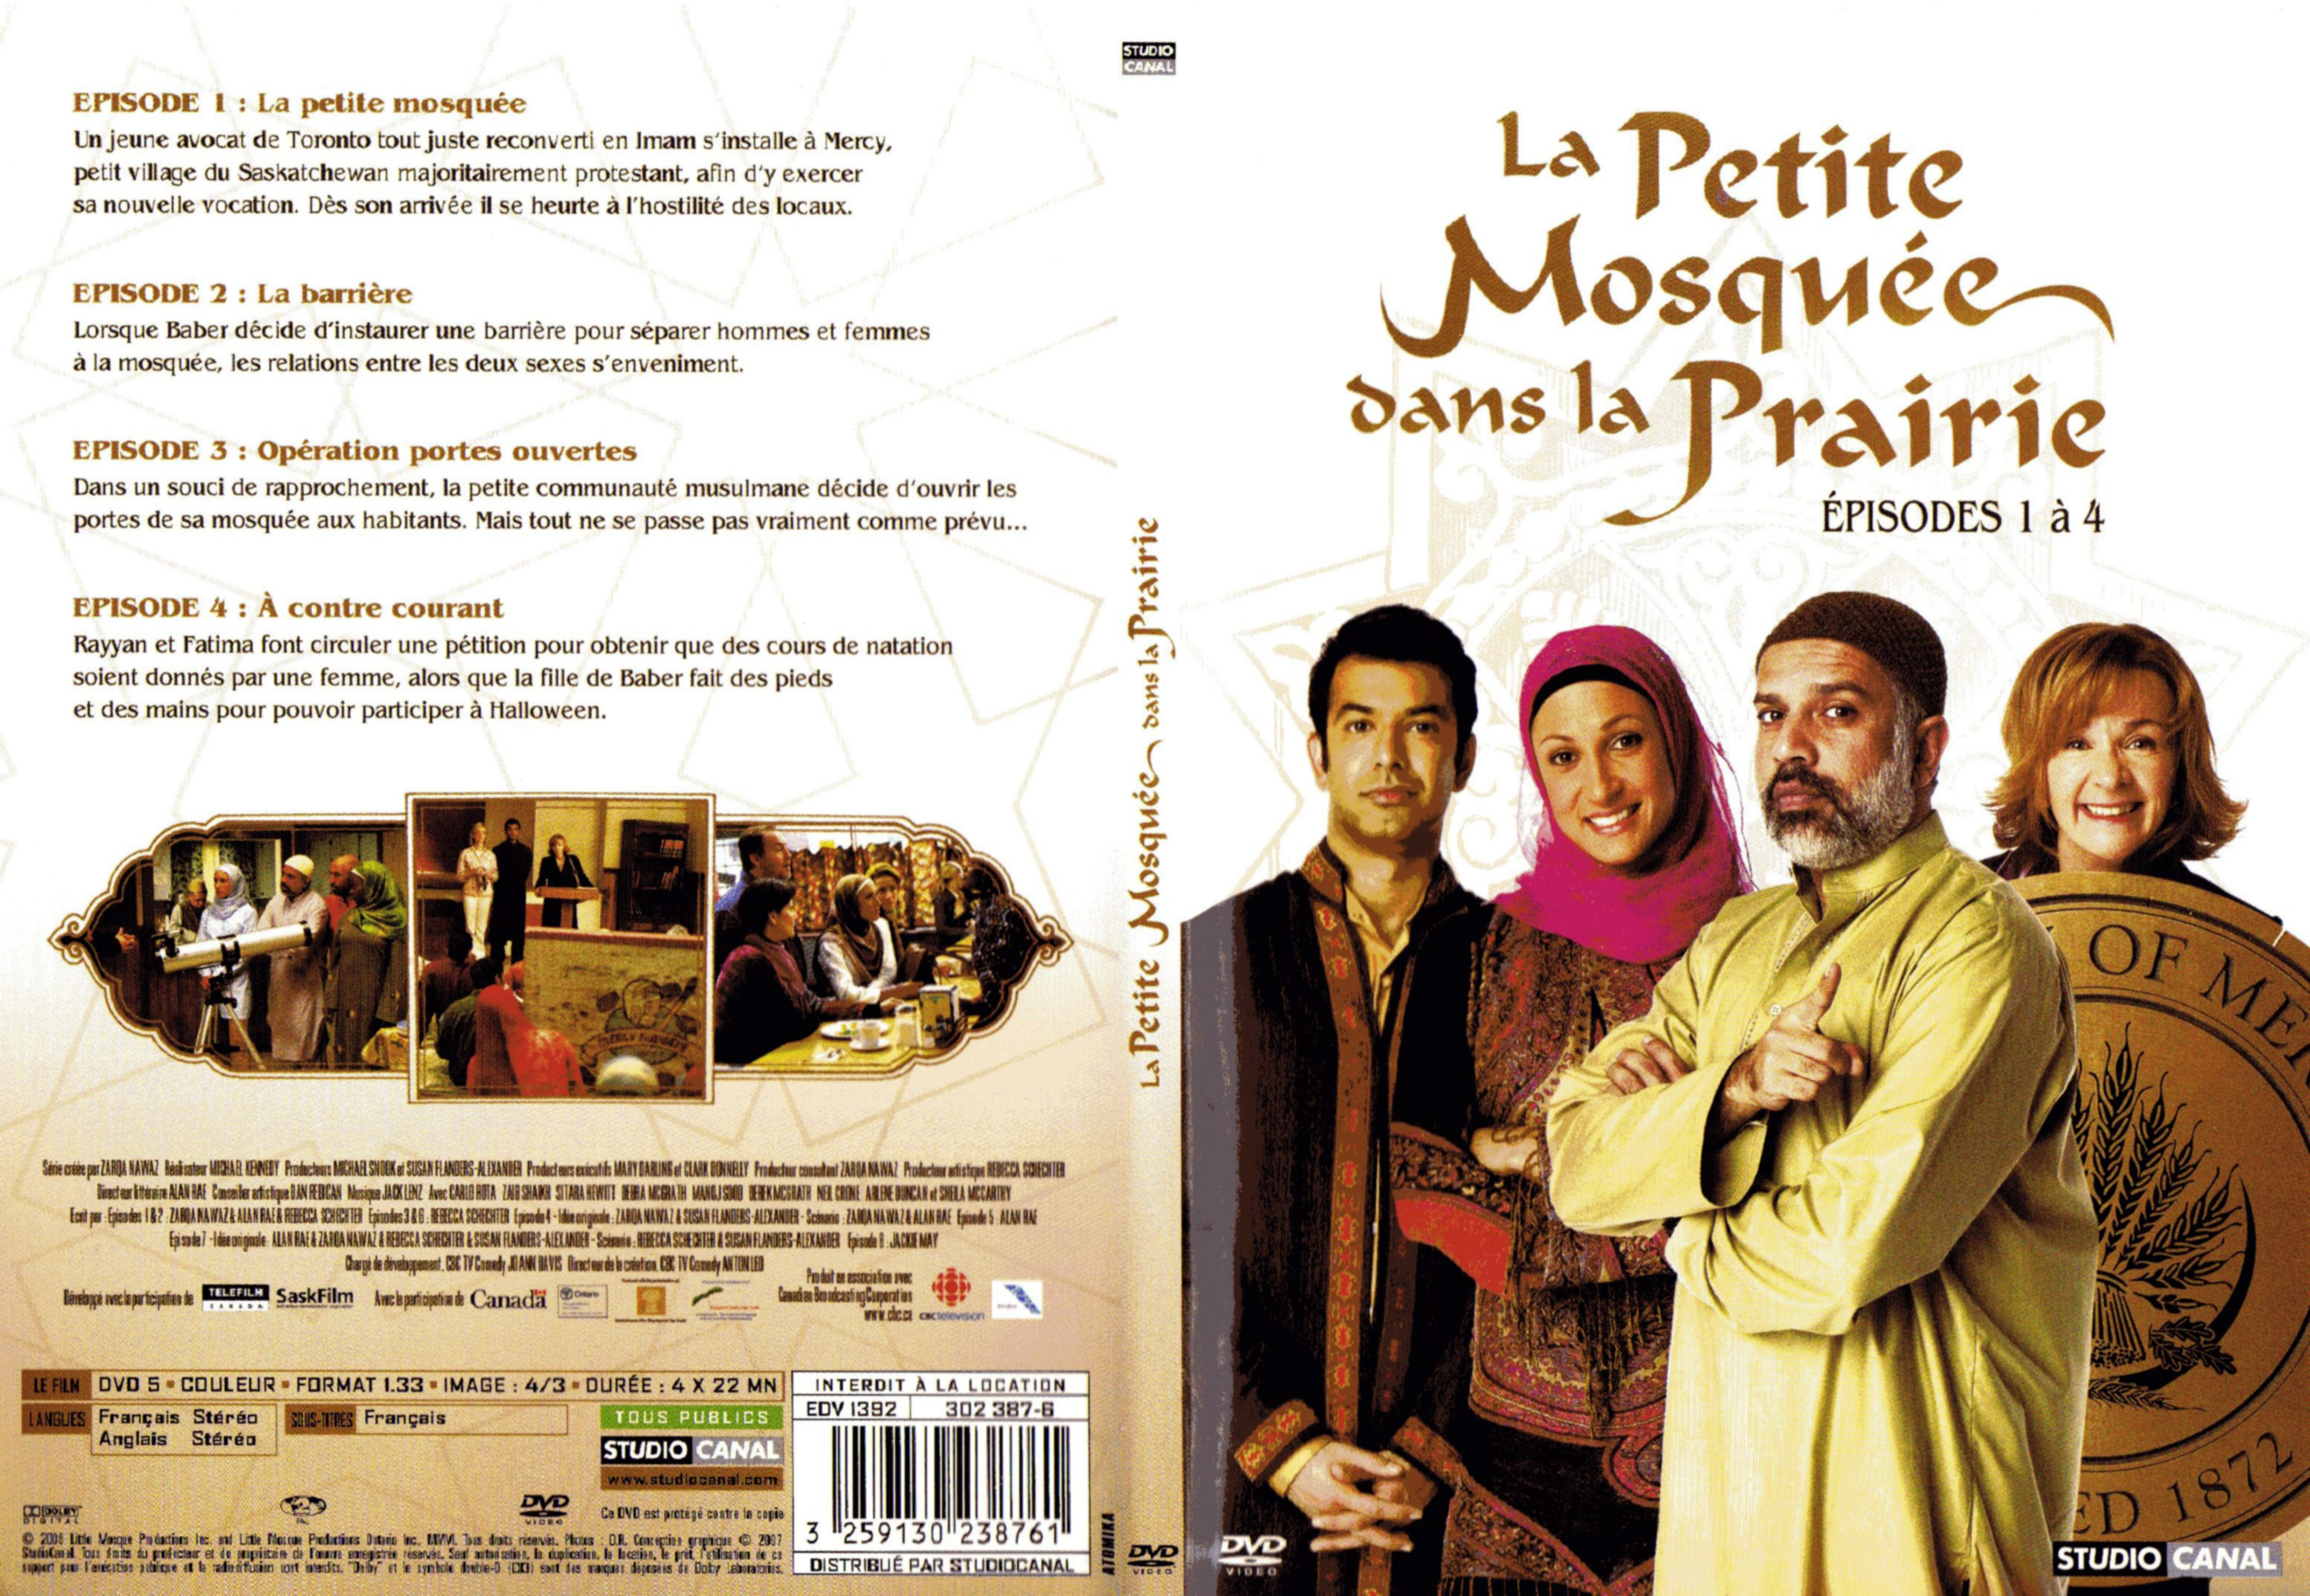 Jaquette DVD La petite mosque dans la prairie saison 1 DVD 1